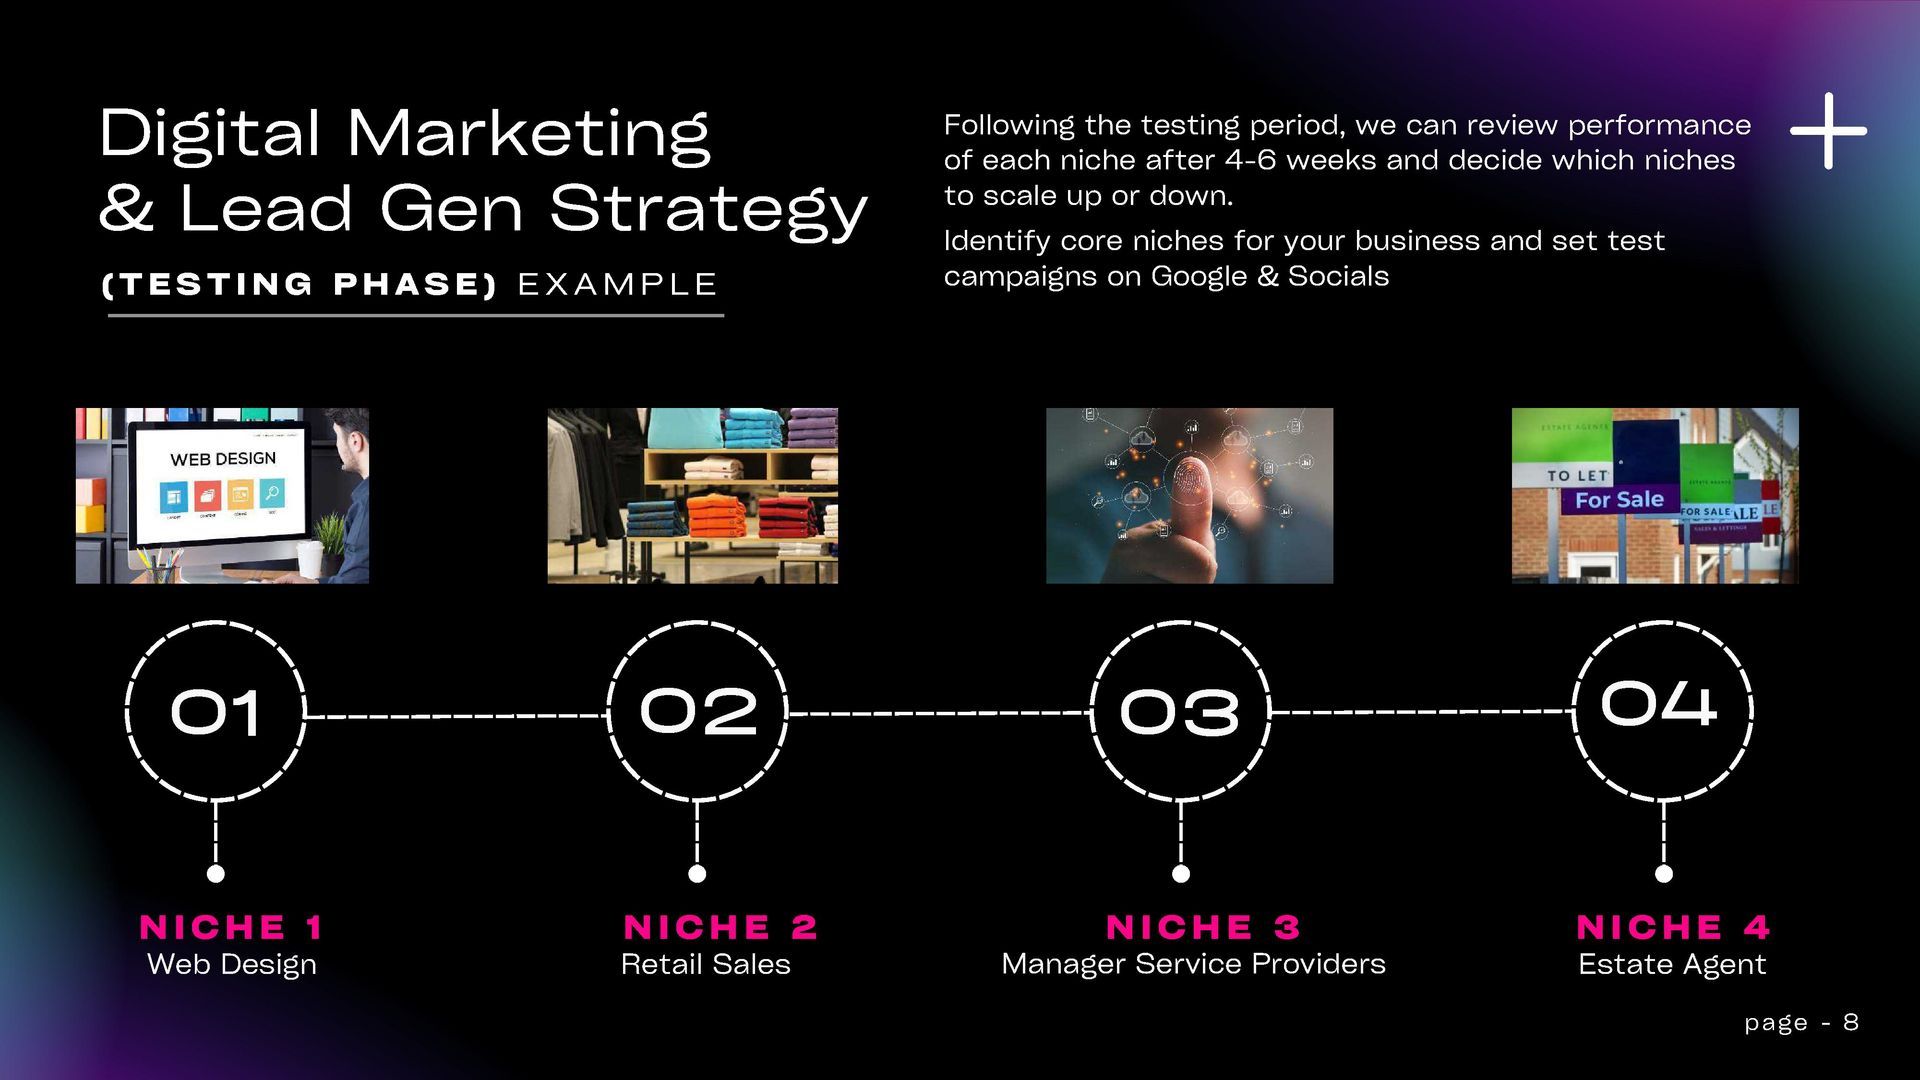 A digital marketing and lead gen strategy diagram